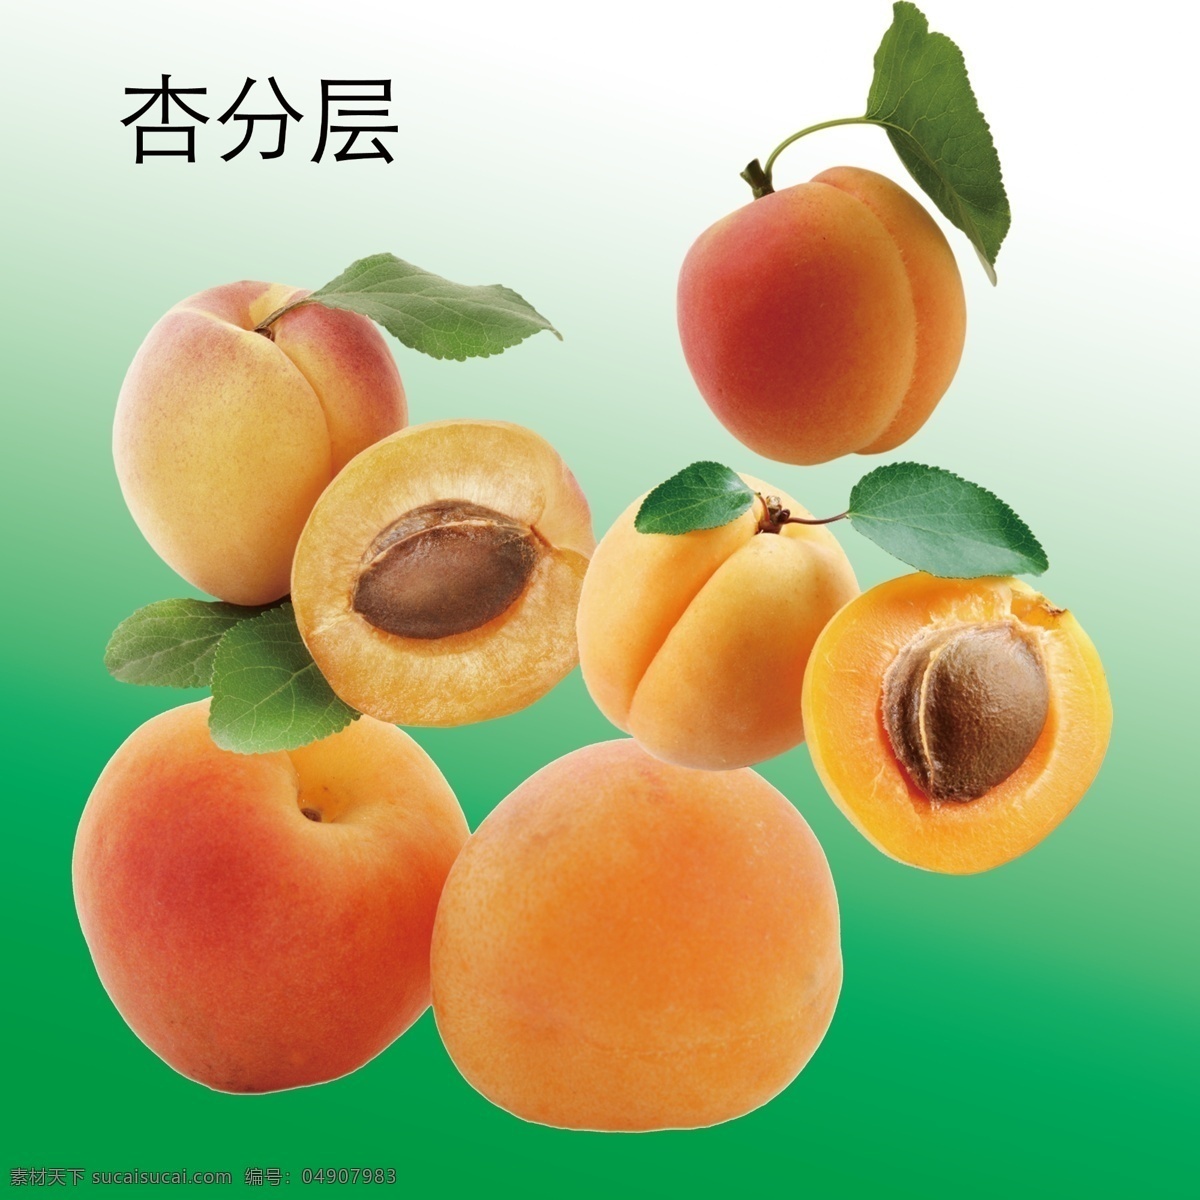 杏图片 杏 山杏 家杏 杏子 带叶杏 甜杏 水果 蔬菜水果 节日类目 分层